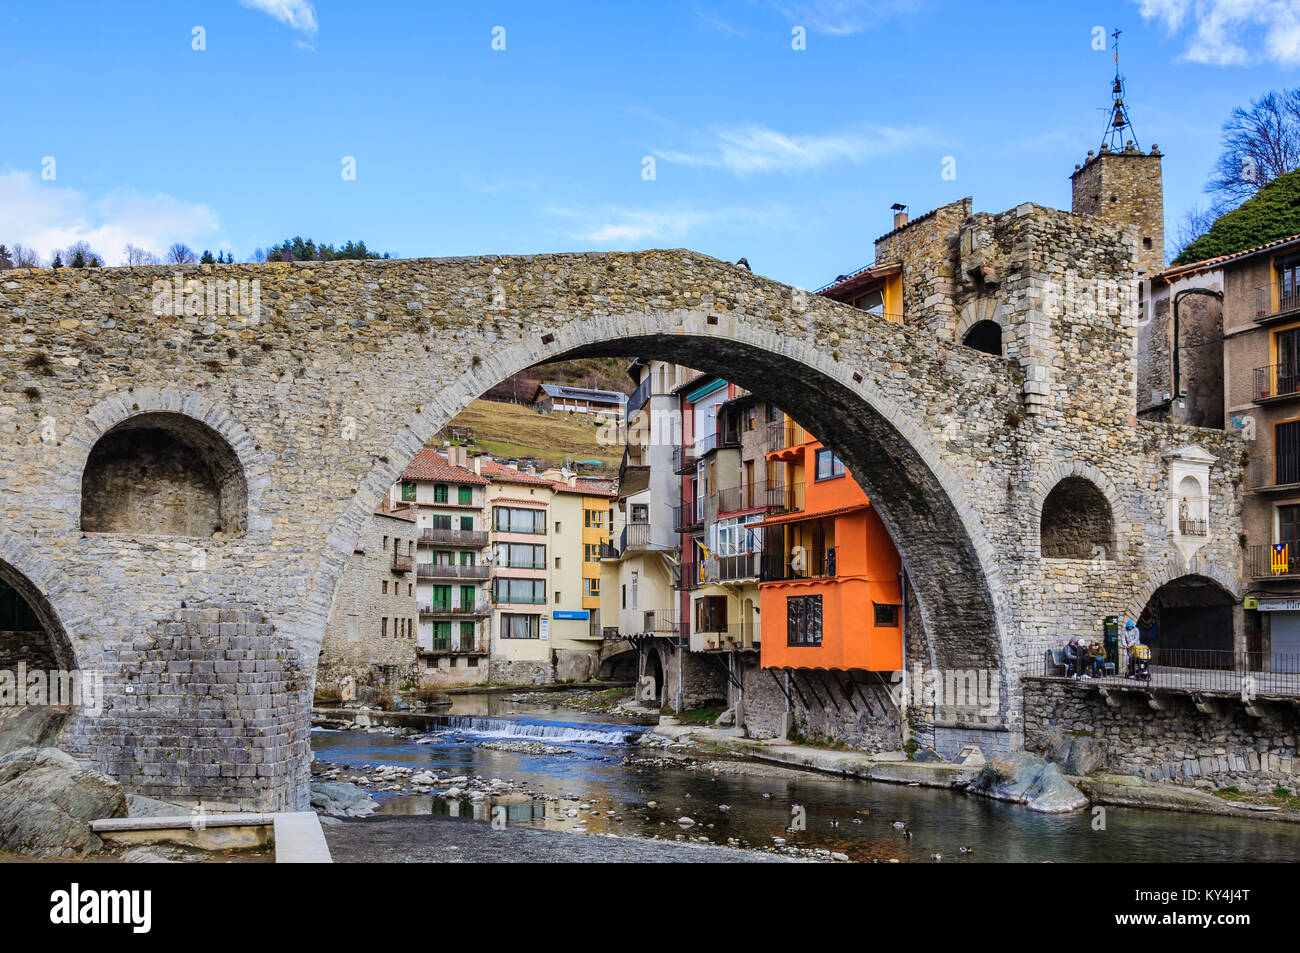 Vieux pont de pierre dans le village Catalan médiéval de Camprodon, Espagne Banque D'Images